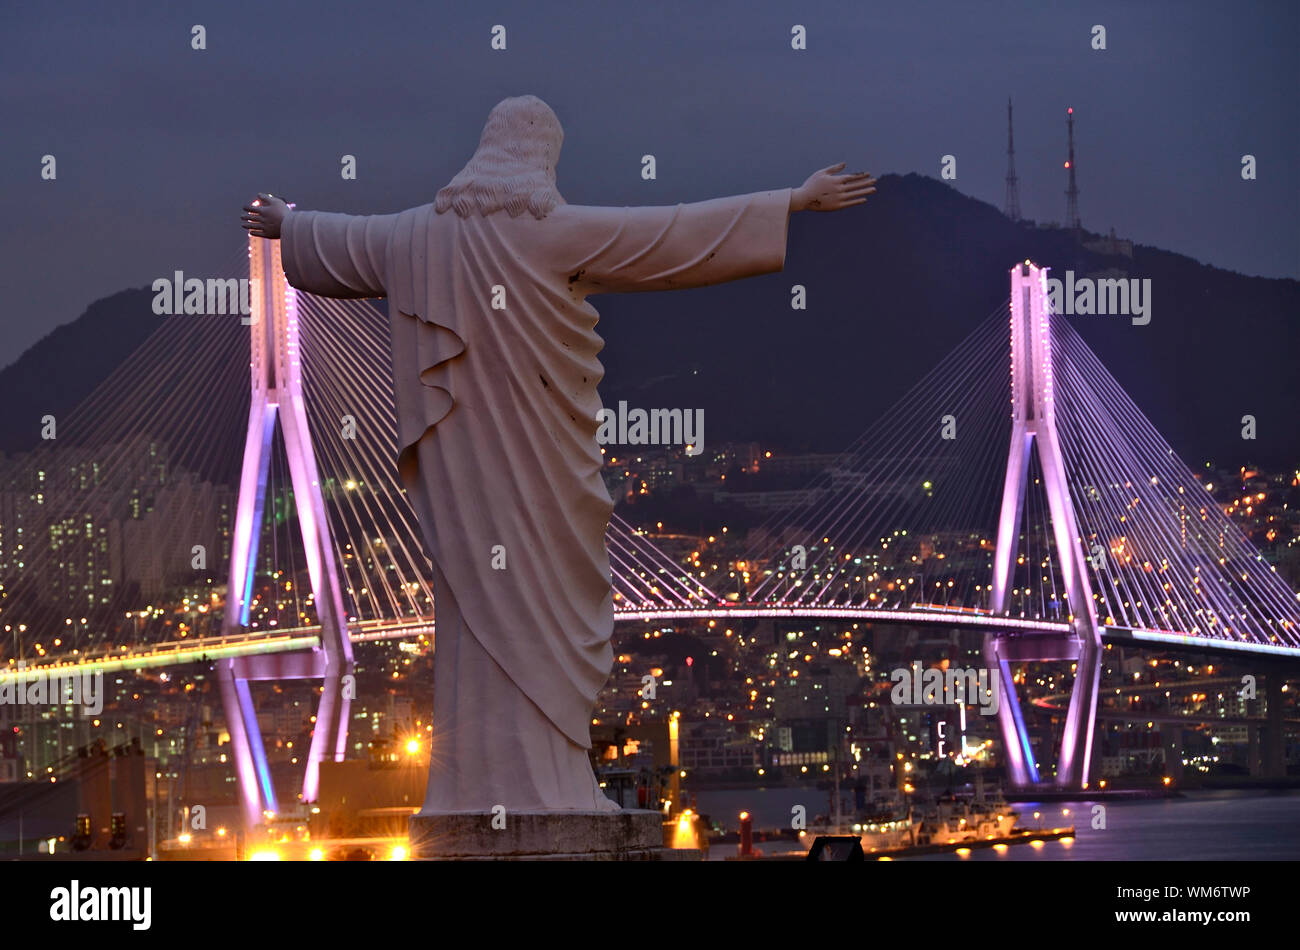 La statue du Christ, veille sur le pont de Bukhang à Busan, Corée du Sud Banque D'Images